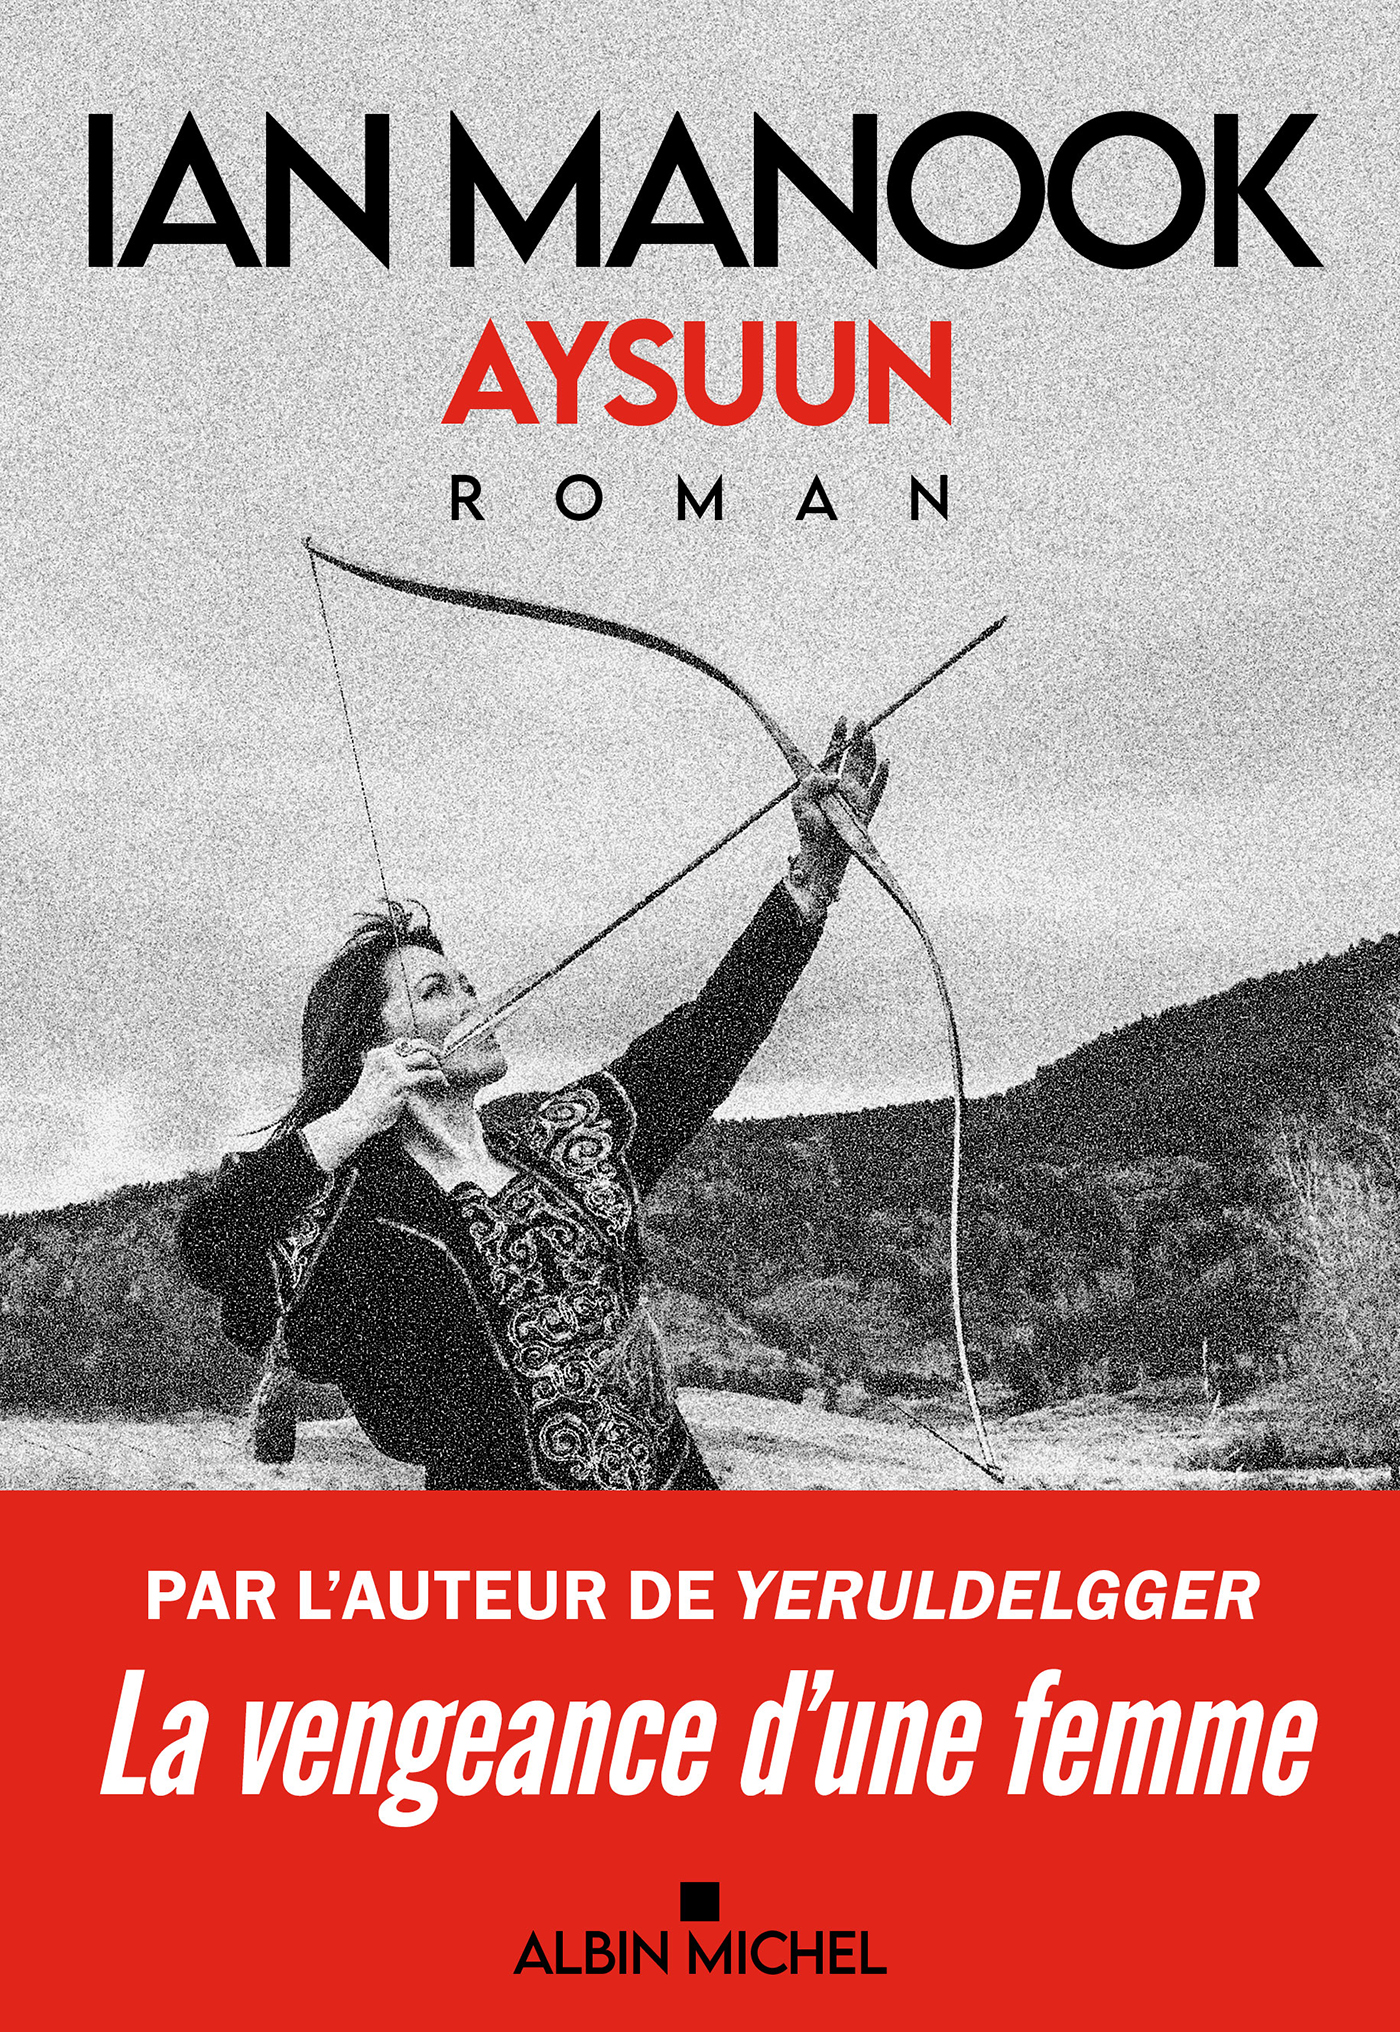 Couverture du livre Aysuun